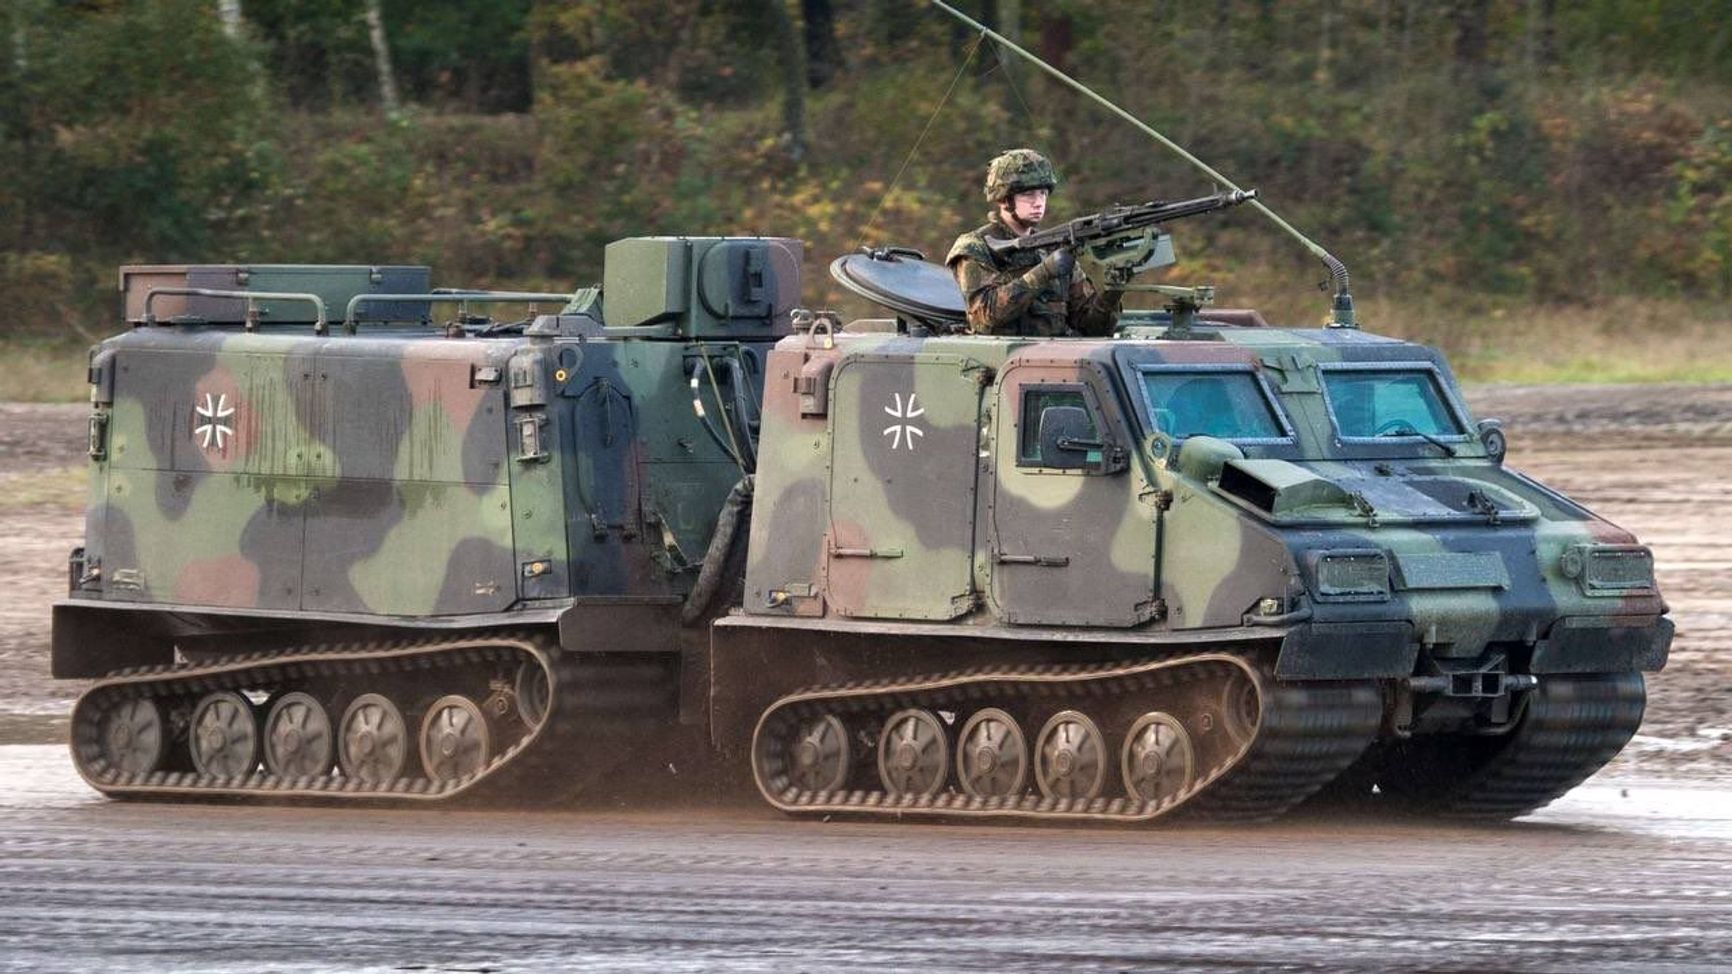 A Bandvagn 206 all-terrain vehicle